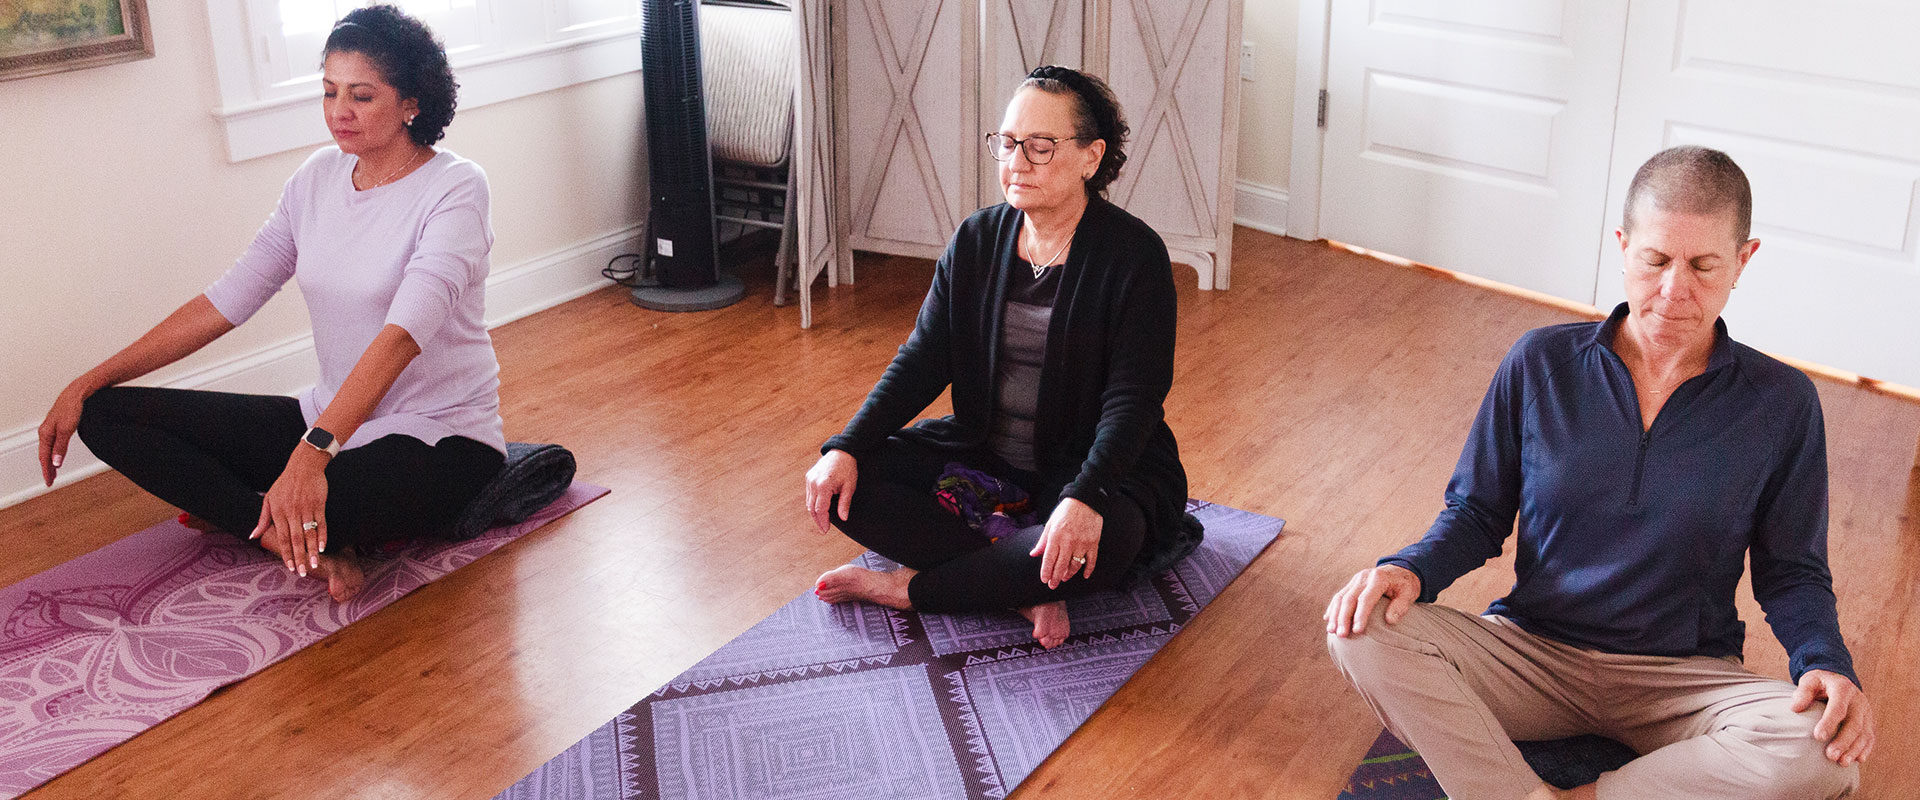 3 women meditating